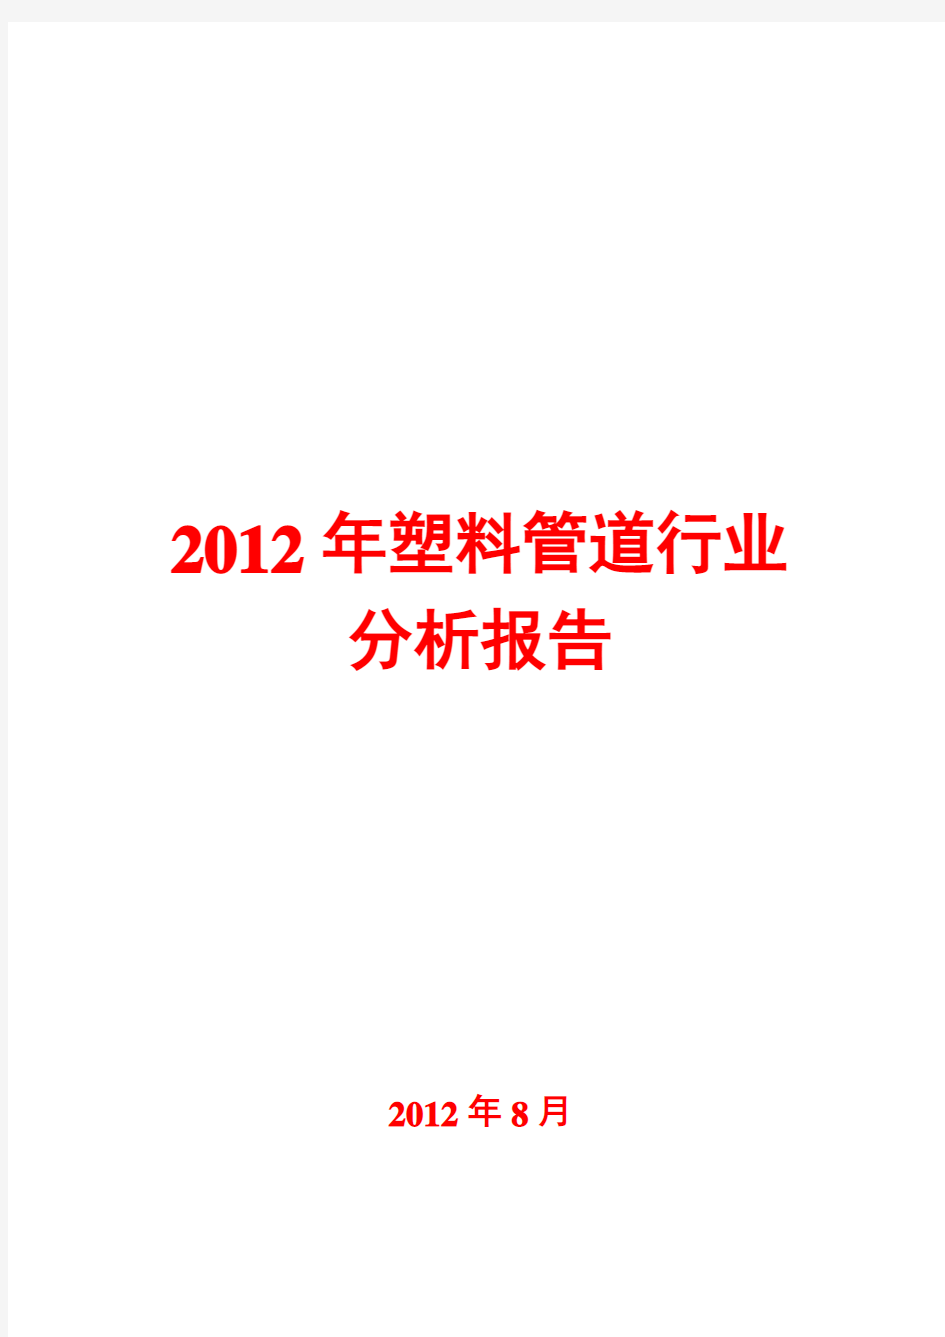 塑料管道行业分析报告2012